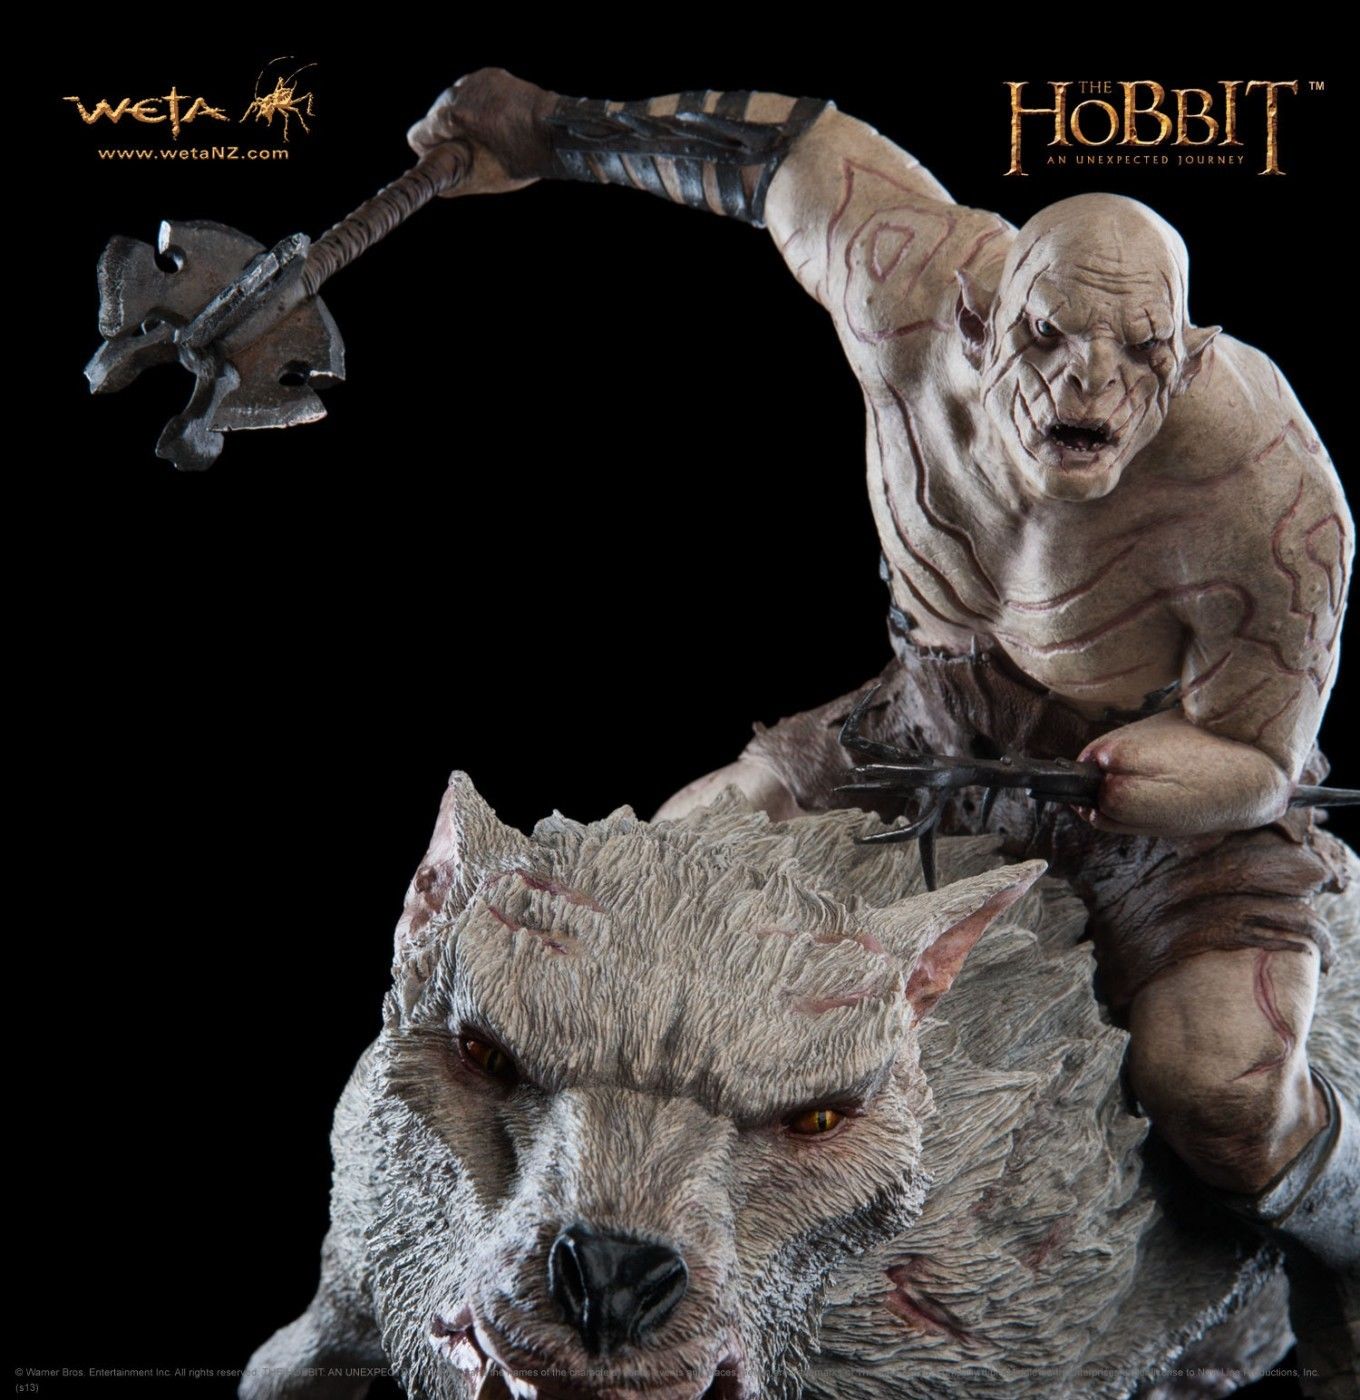 Les meilleures ventes d'objets Le Hobbit sur eBay